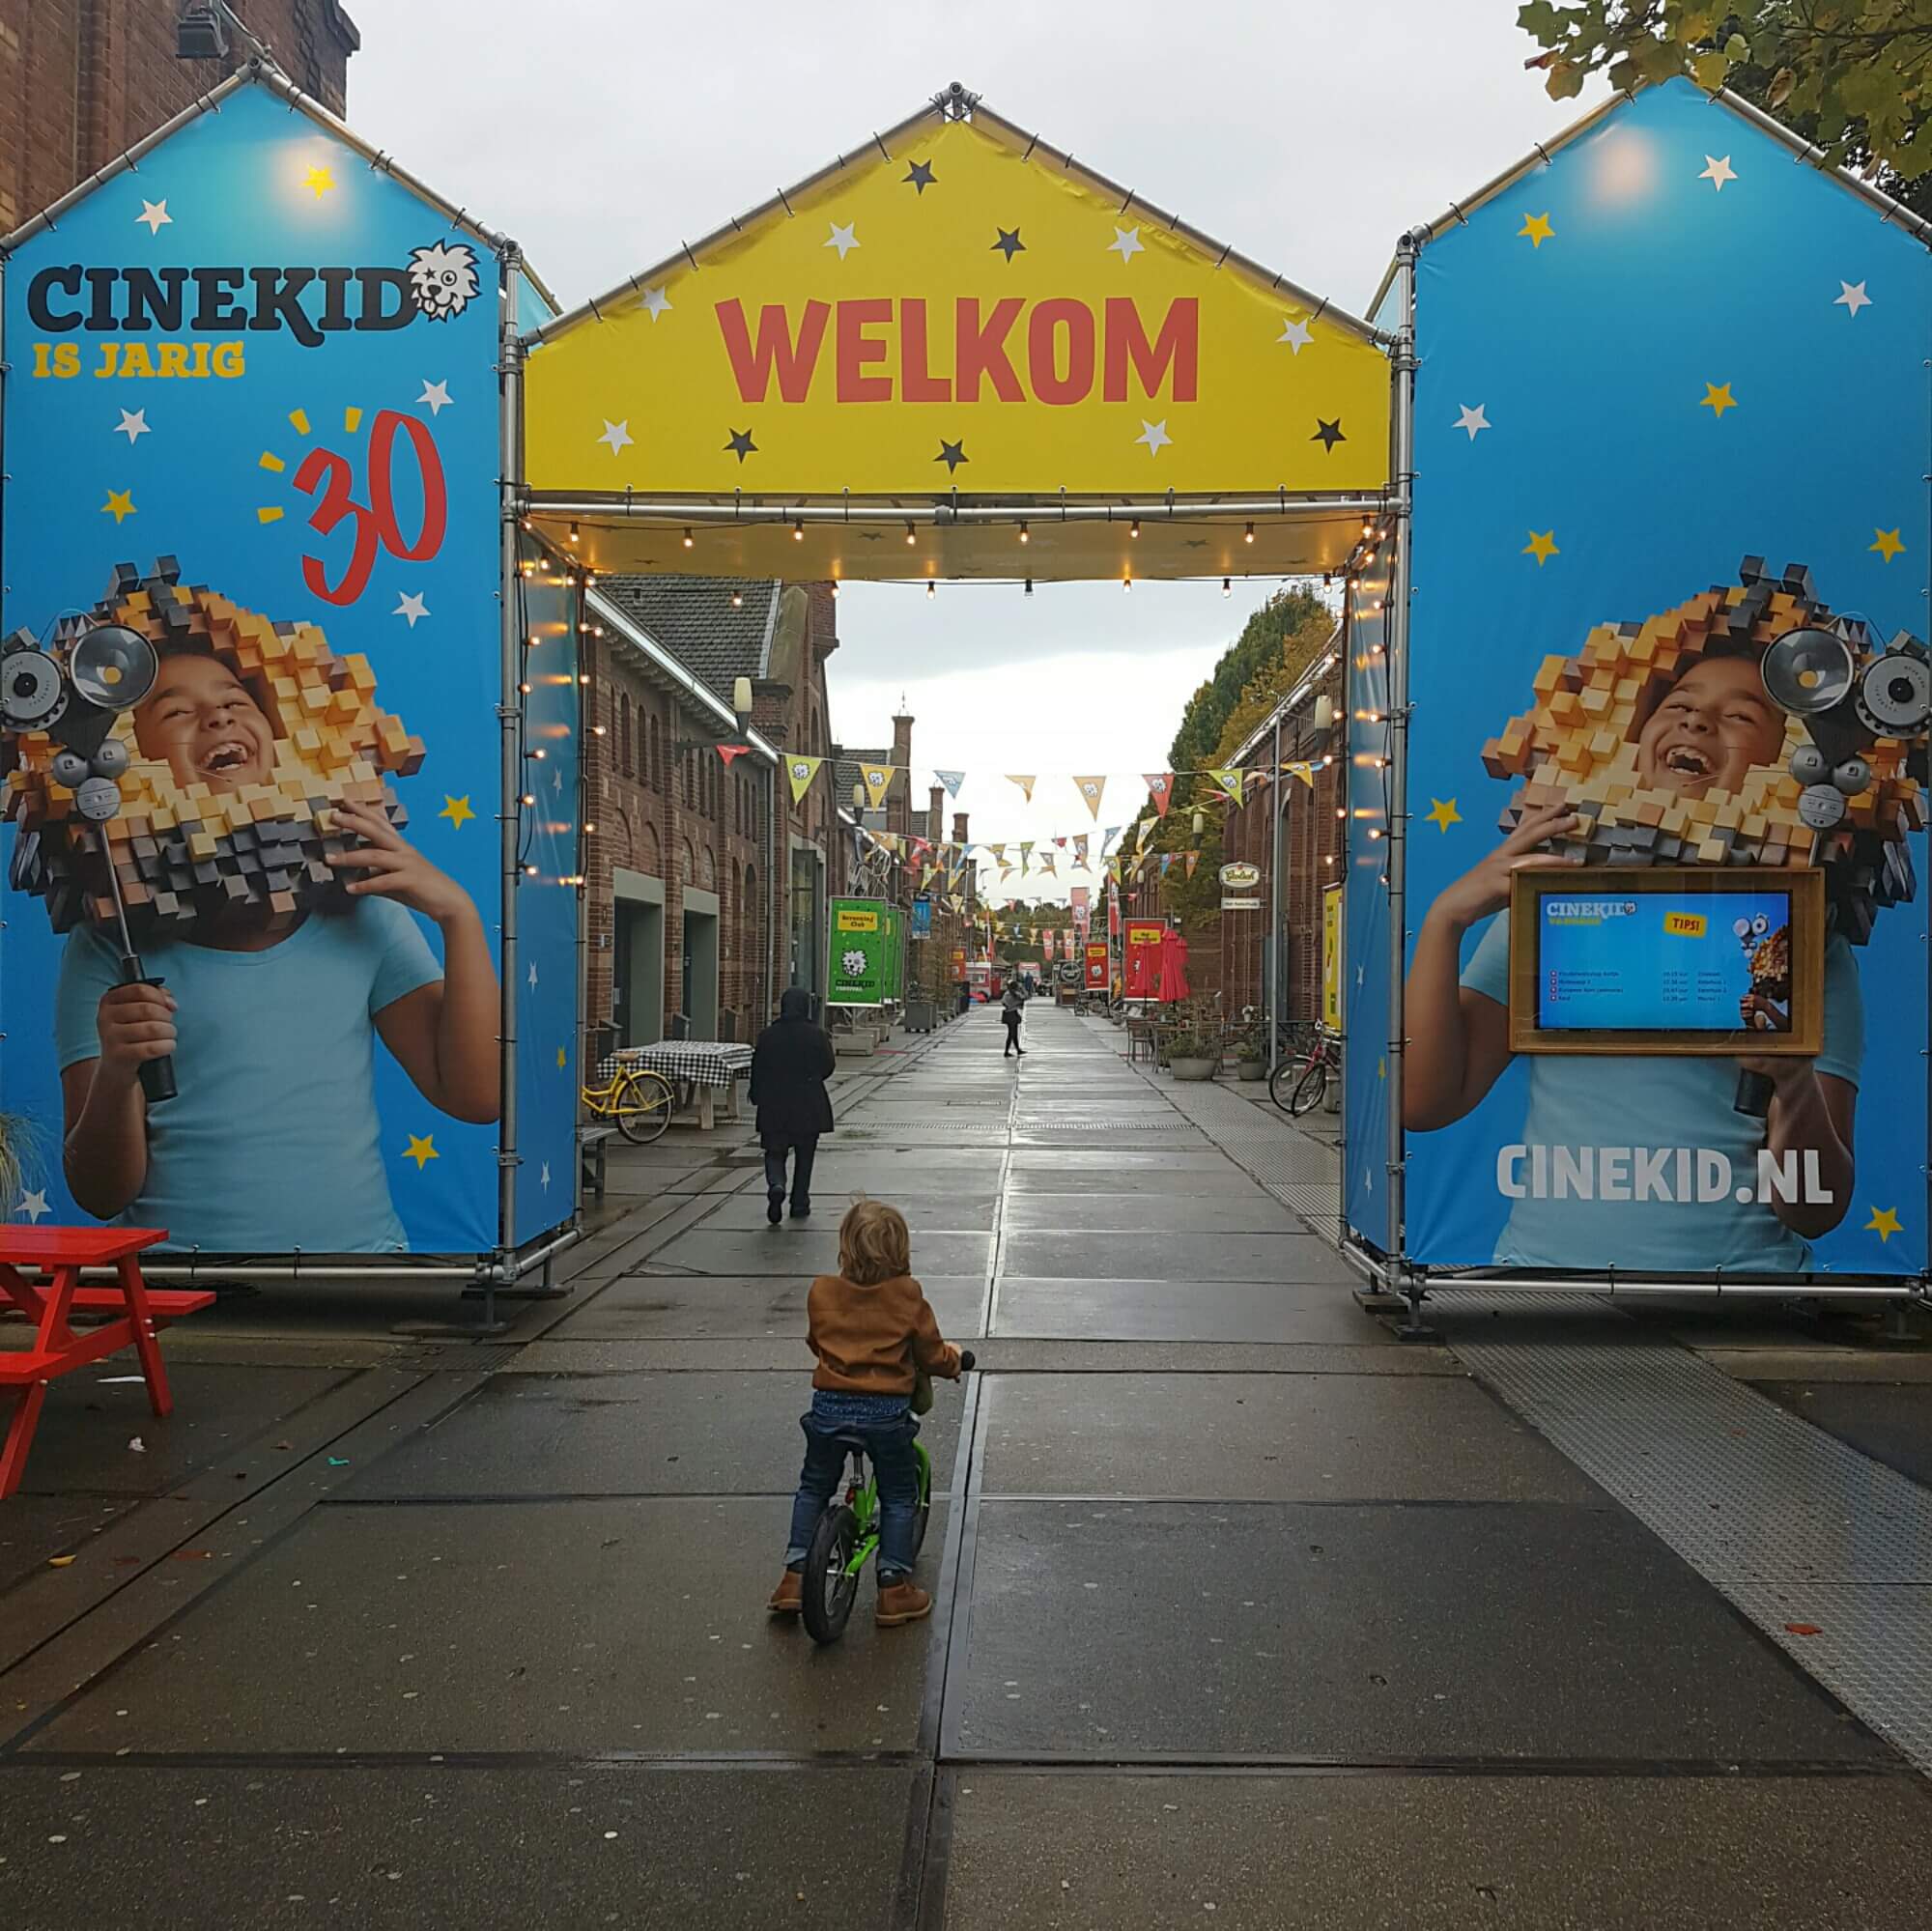 Dagje Amsterdam West met kinderen in de herfstvakantie, inclusief Cinekid